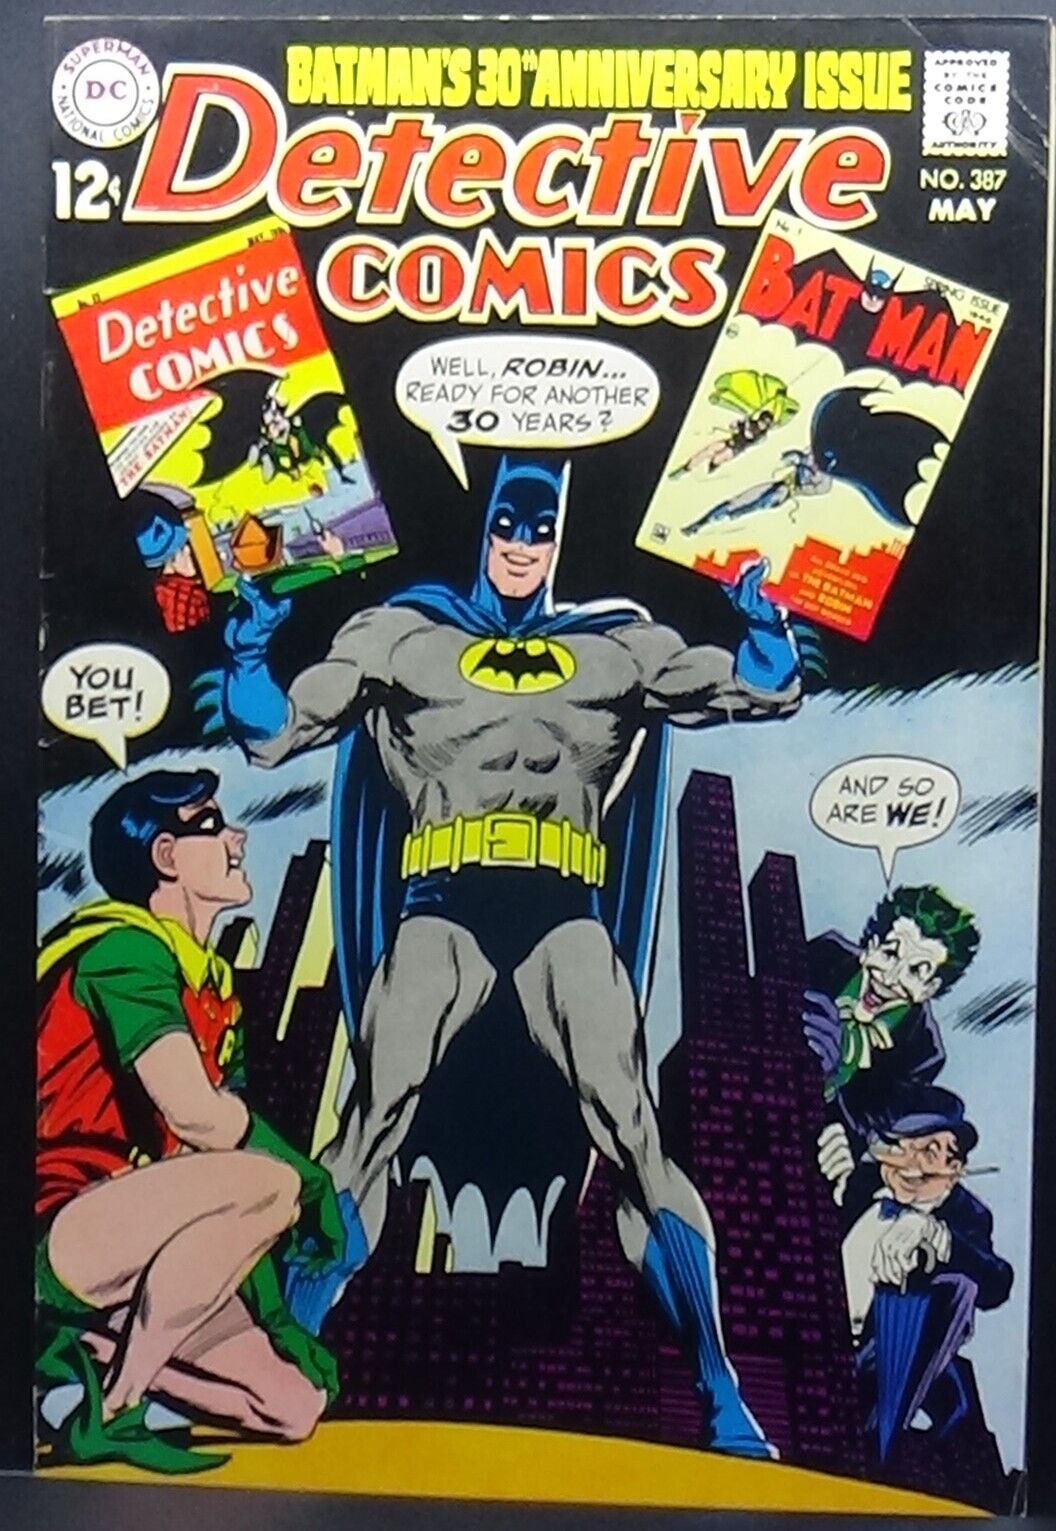 DETECTIVE COMICS #387 1969 7.5 VF- REPRINTS 1ST BATMAN APP JOKER+PENGUIN COVER